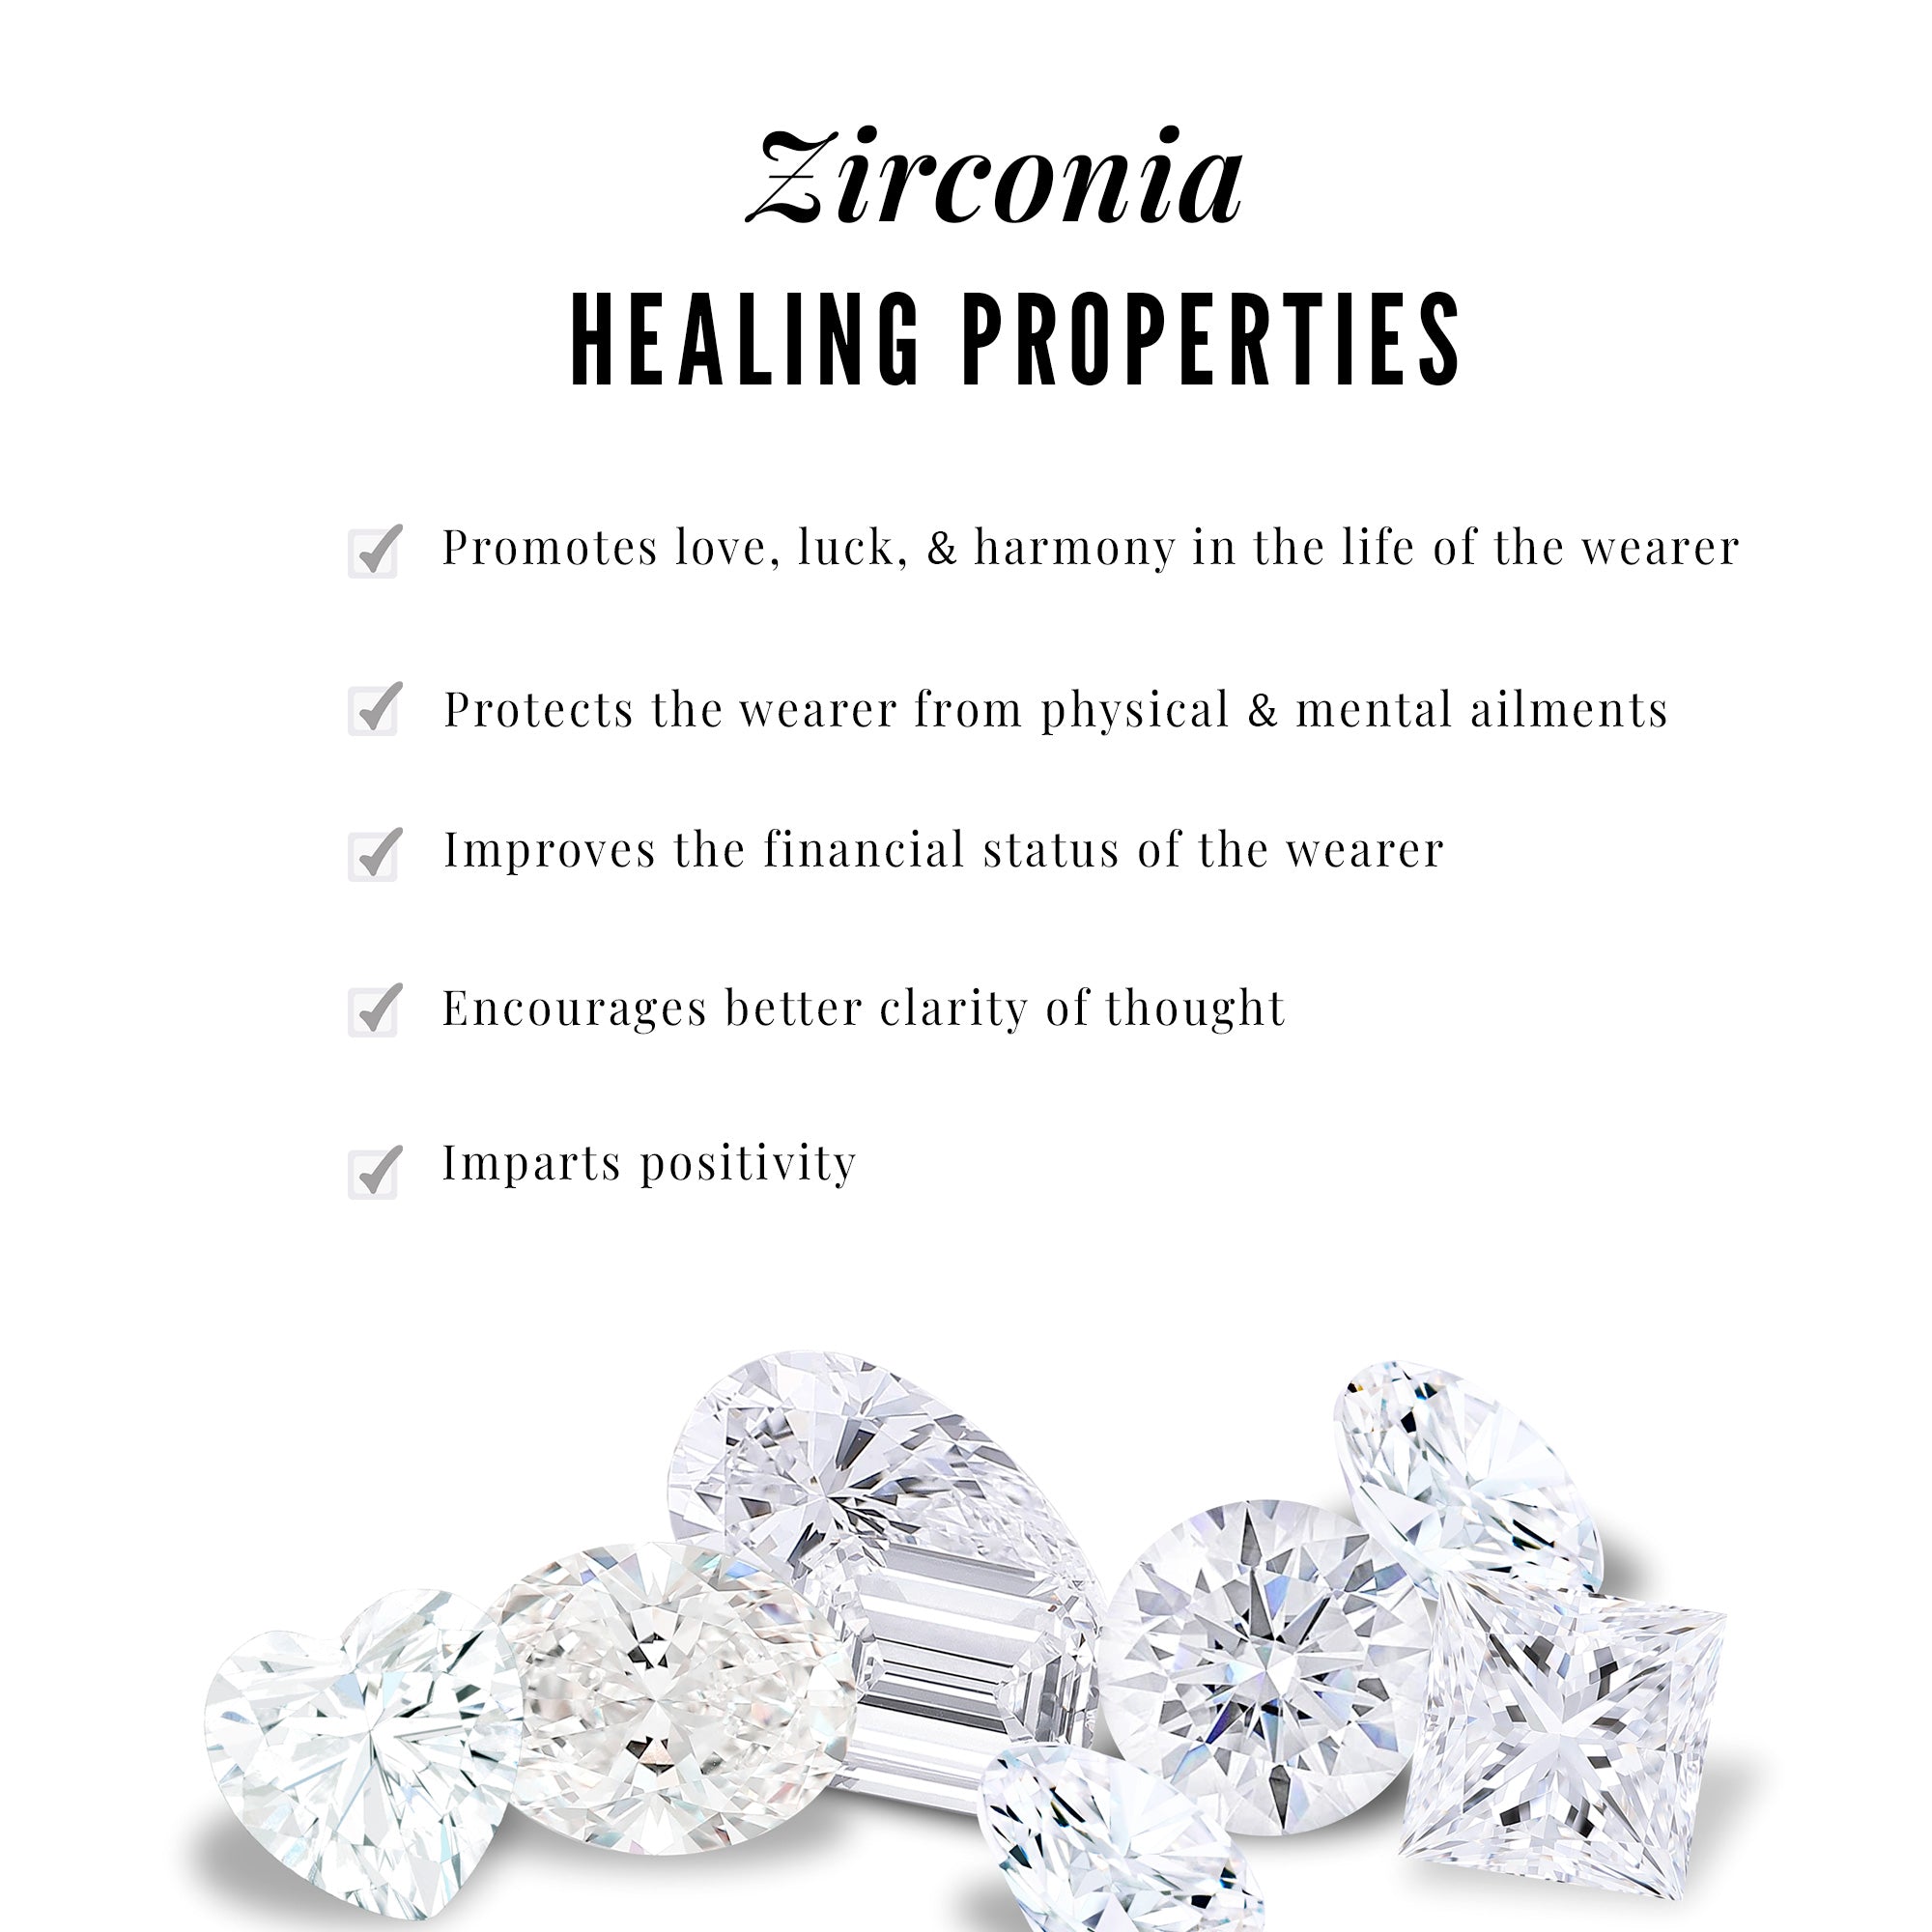 Bezel Set Cluster Stud Earrings with Round Zircon Zircon - ( AAAA ) - Quality - Rosec Jewels